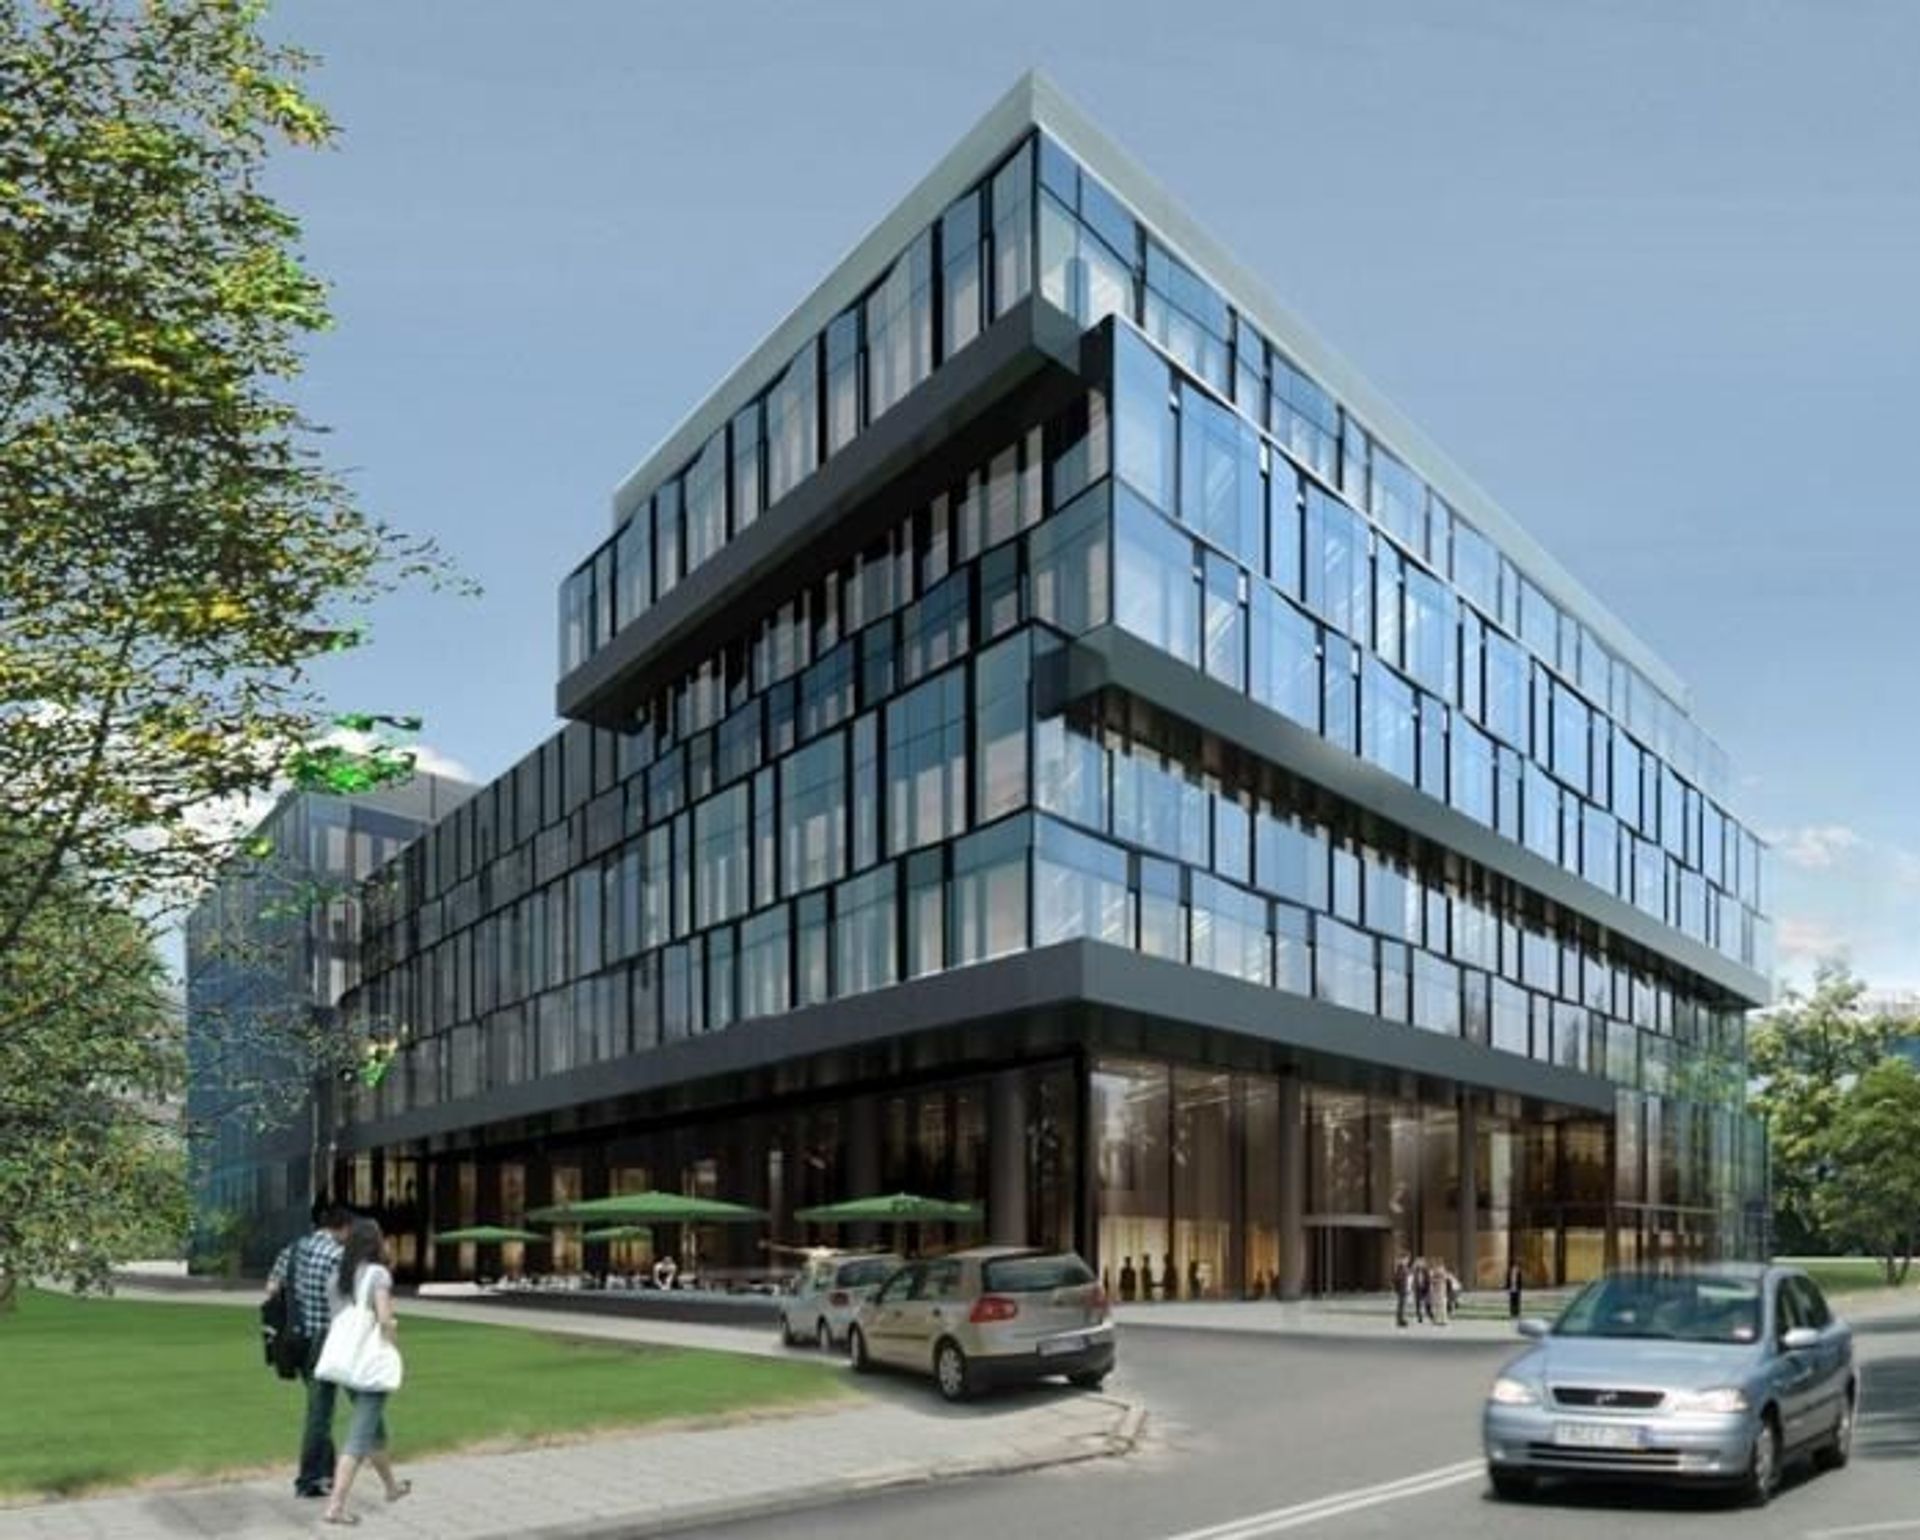  Procter & Gamble inauguruje działalność centrum planowania w budynku Konstruktorska Business Center w Warszawie